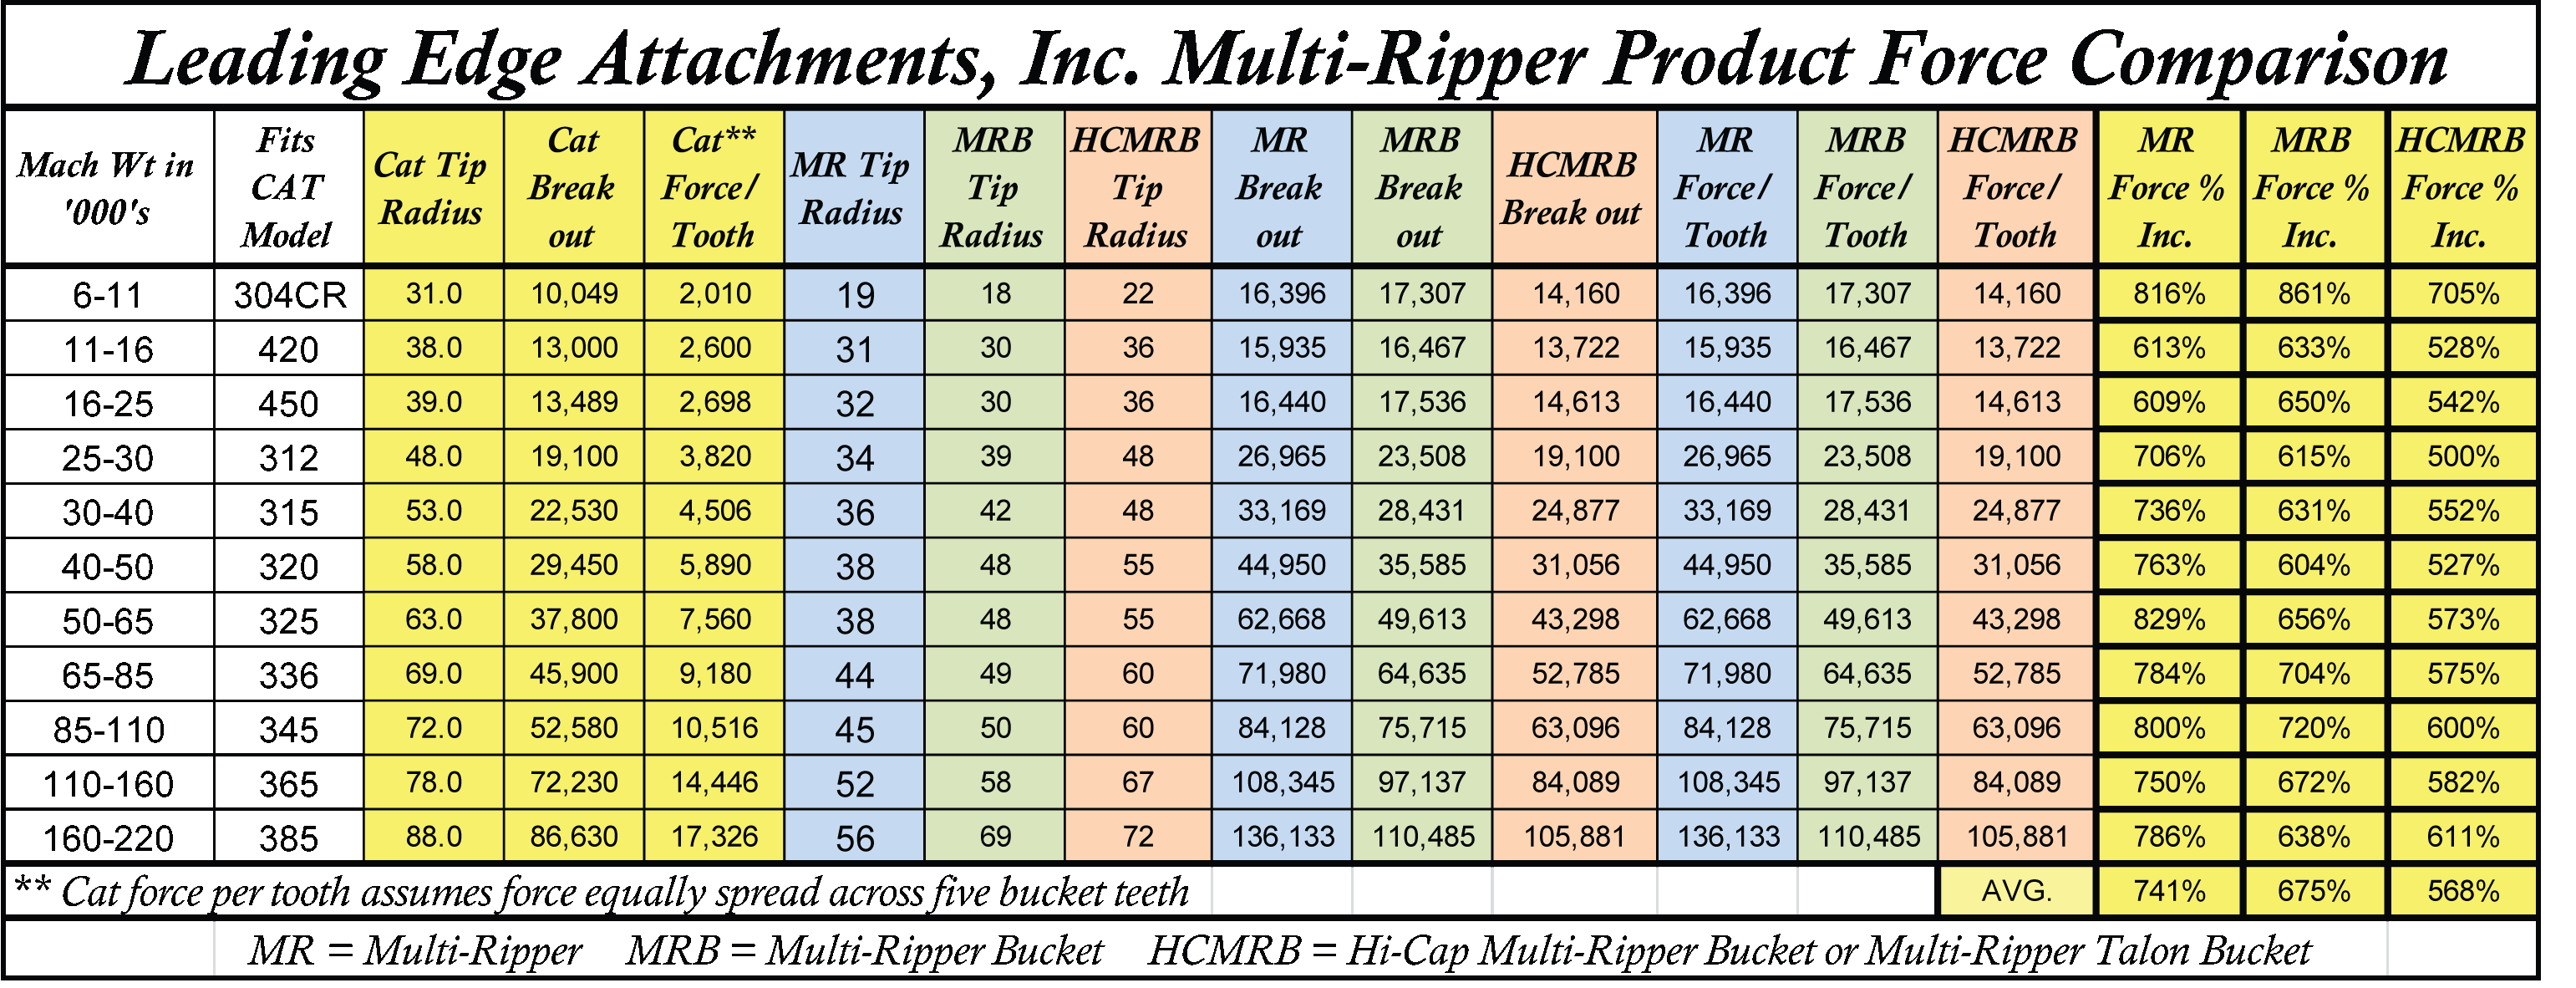 Multi-Ripper Product Force Comparison